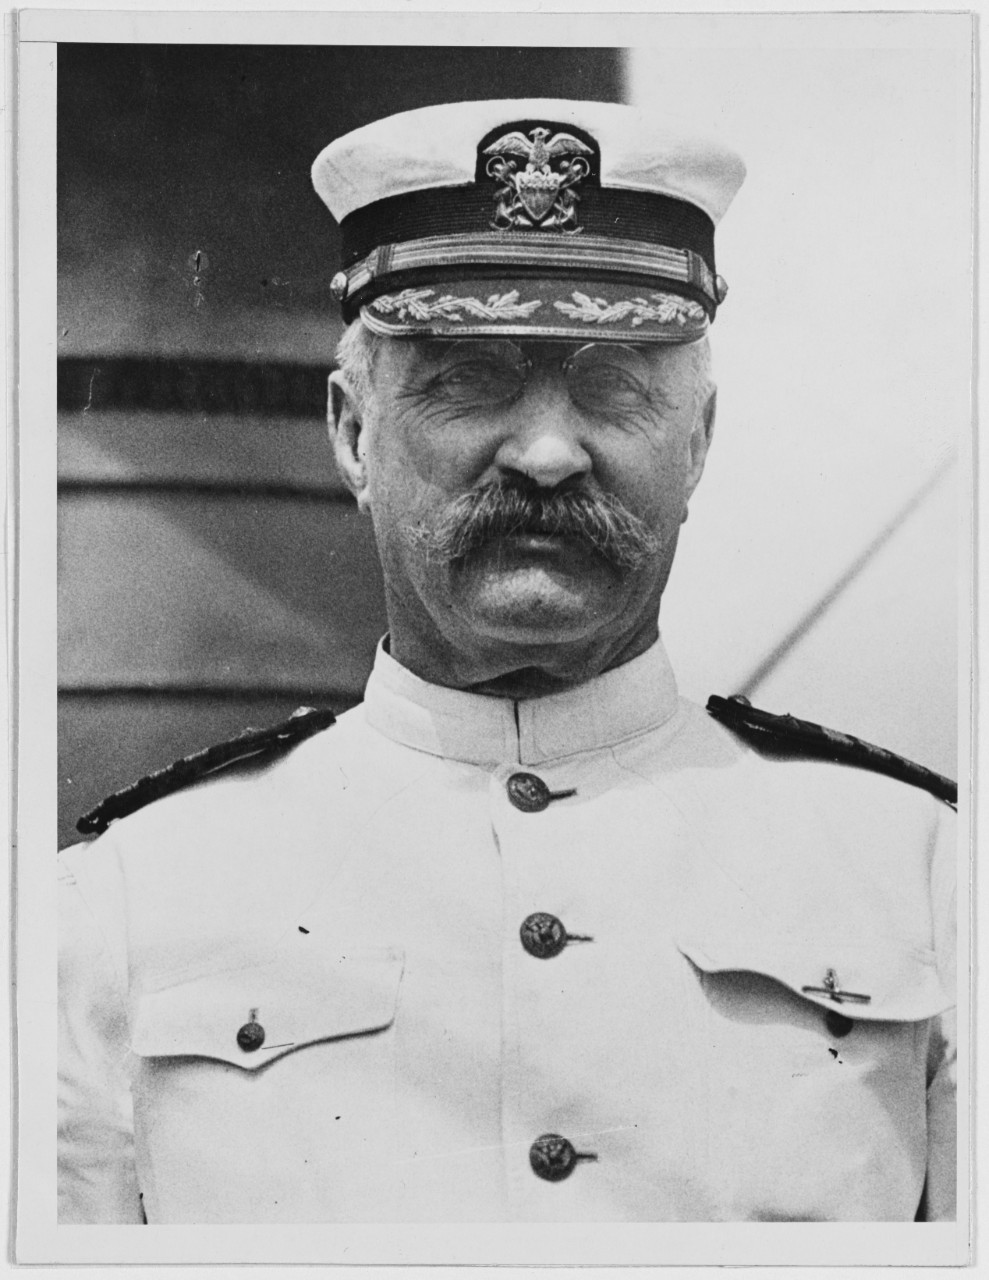 Captain Albert W. Grant, USN